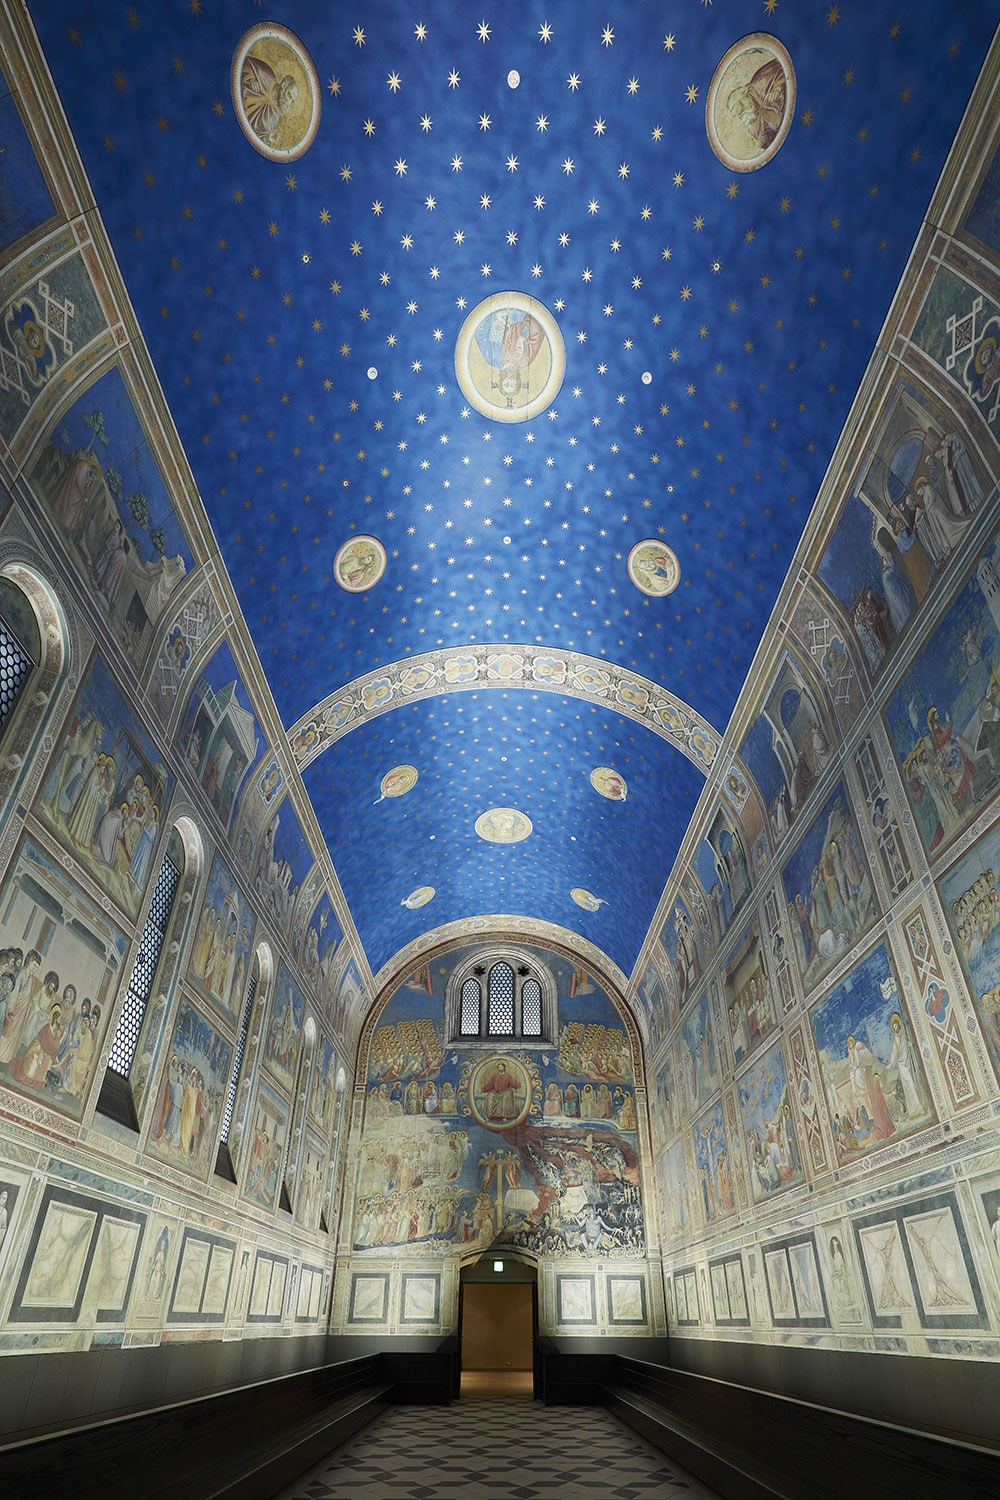 ジョットにより聖書の世界が描かれた北イタリア・パドヴァにある《スクロヴェーニ礼拝堂壁画》を環境空間ごとそのまま再現した、画期的な立体展示。